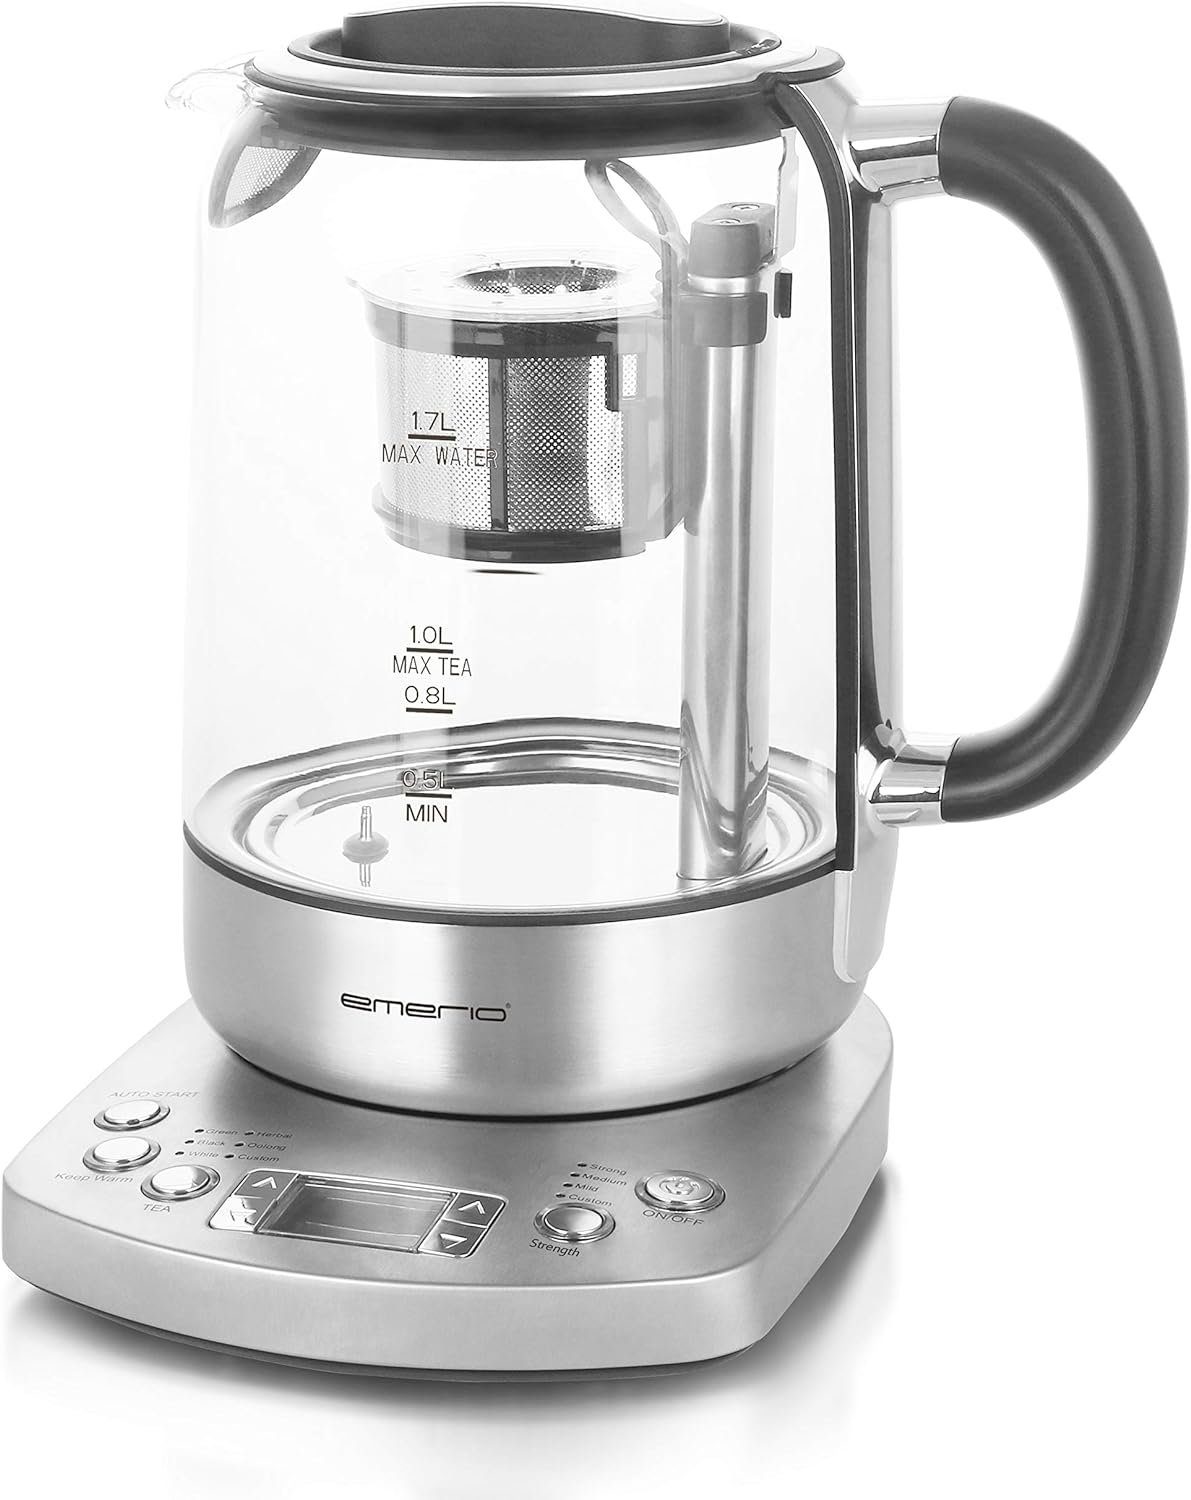 Emerio Wasserkocher, 1,7 TESTSIEGER Teesieb l, W, Wasserkocher Teekocher Glas 2200,00 mit vollautomatisches